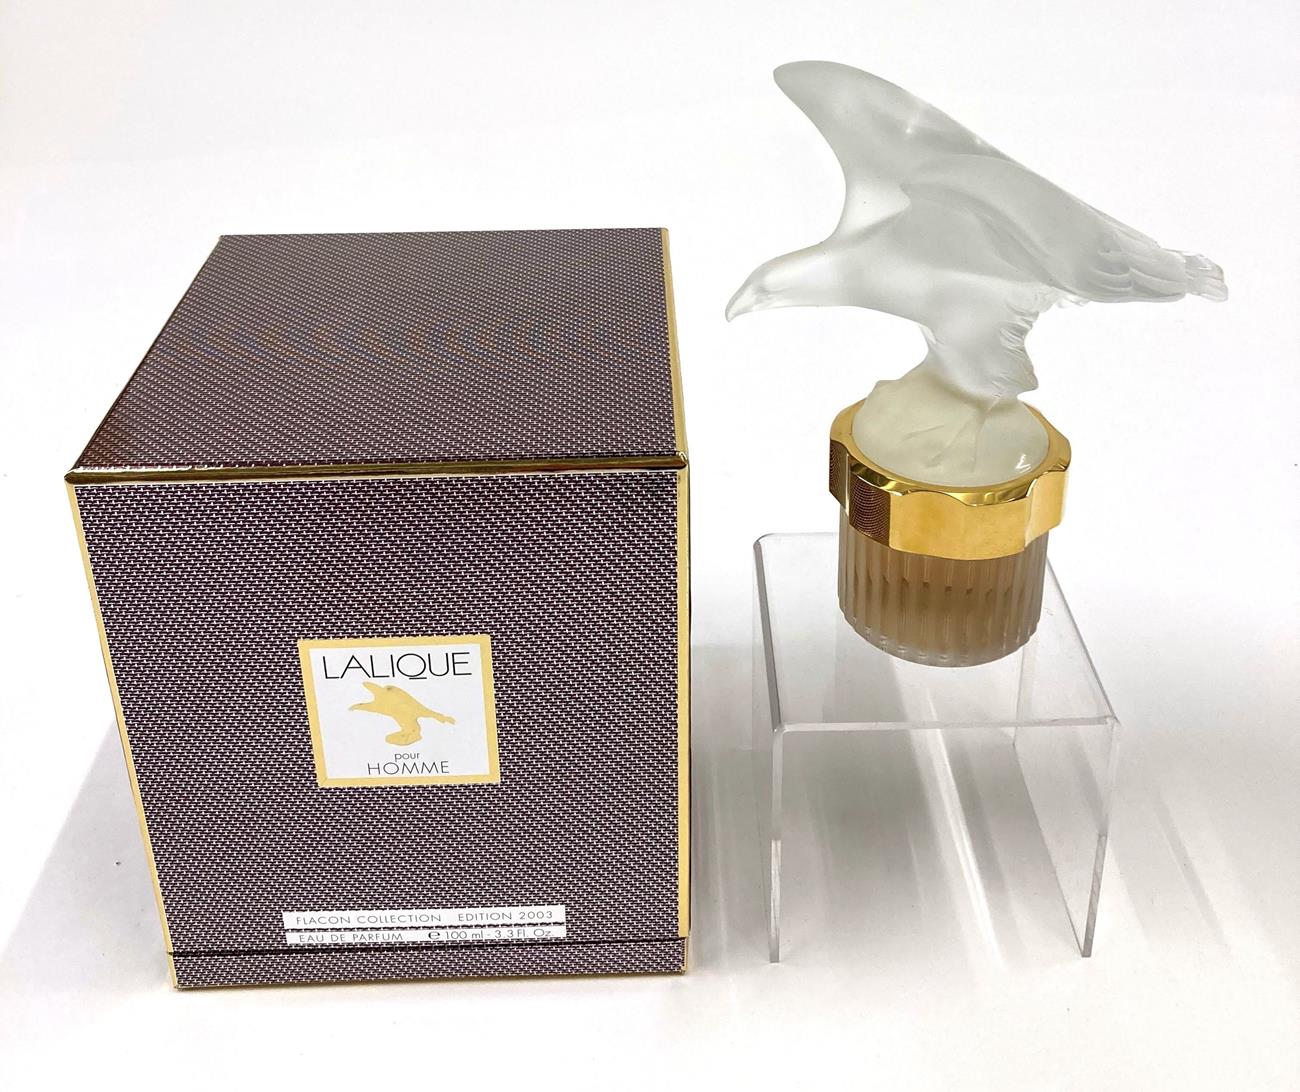 'Eagle' by Lalique Eau De Parfum, Flacon Collection Mascots, 100ml Pour Homme Fragrance (2003)